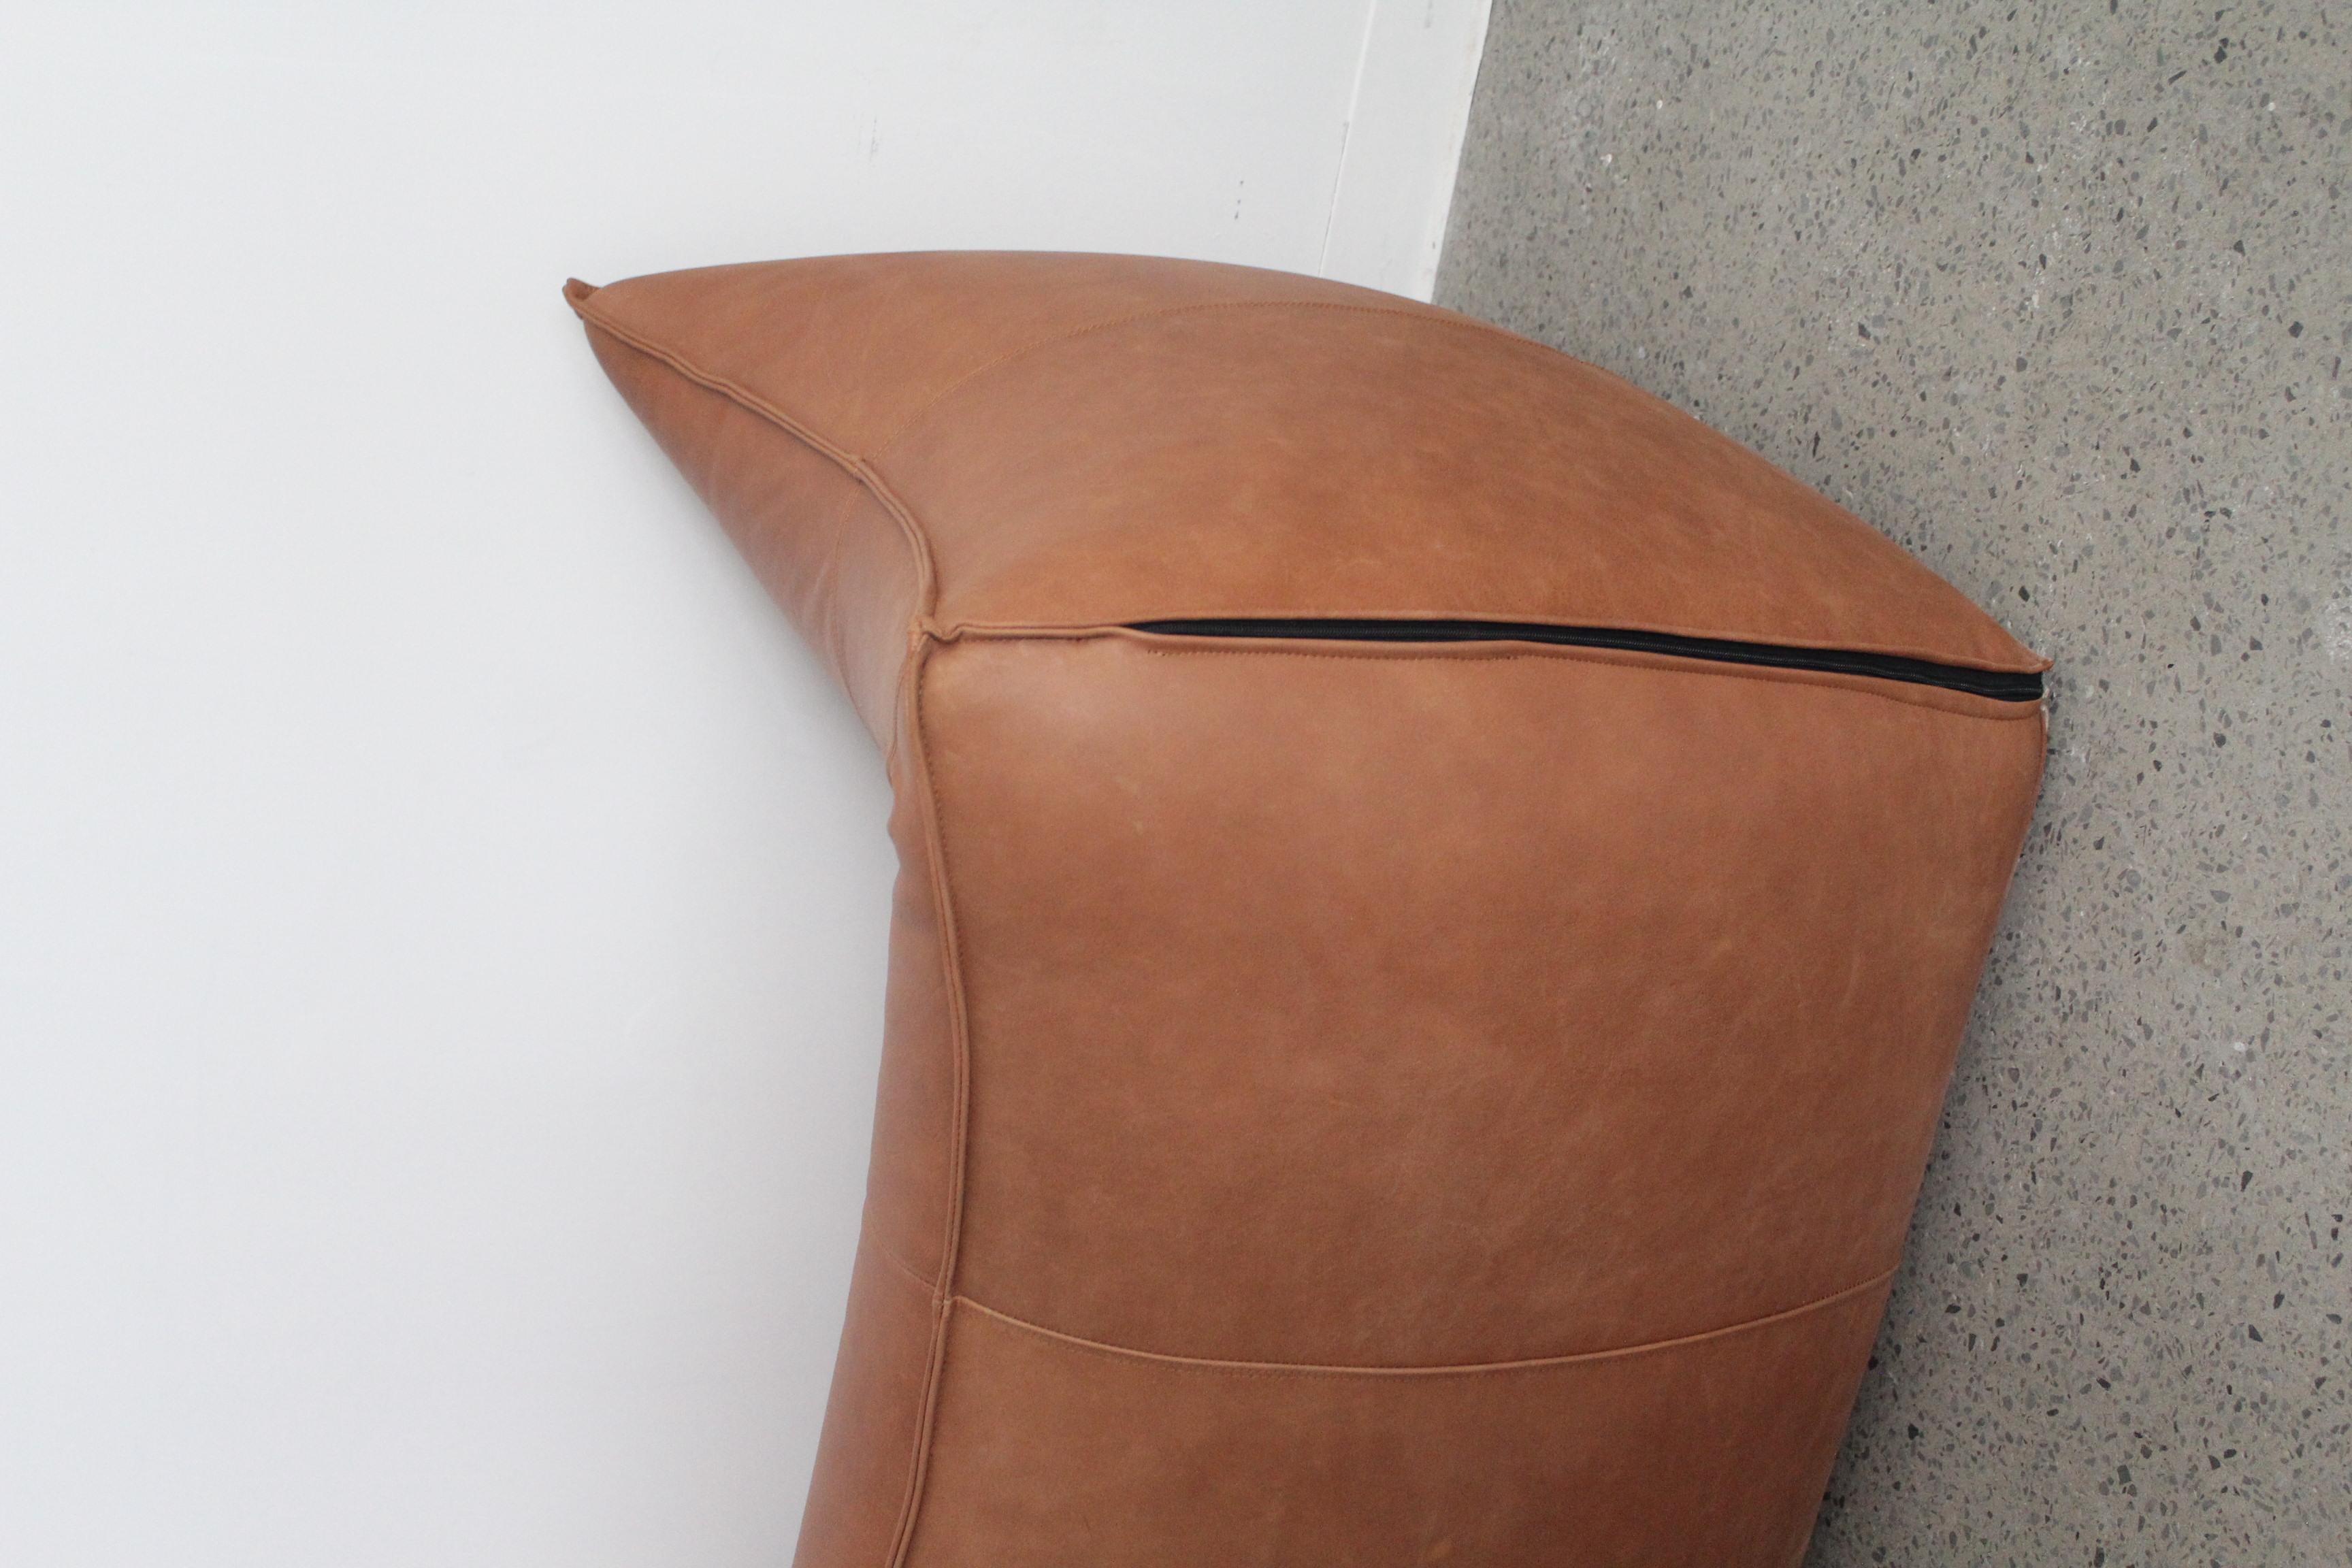 Causeuse Le Bambole par Mario Bellini pour B&B Italia, 1970. Ce canapé emblématique est composé d'un épais cuir brun buffle - intérieur en mousse de polyuréthane avec armature en métal.

En bon état vintage, le canapé a été retapissé.

Dimensions :